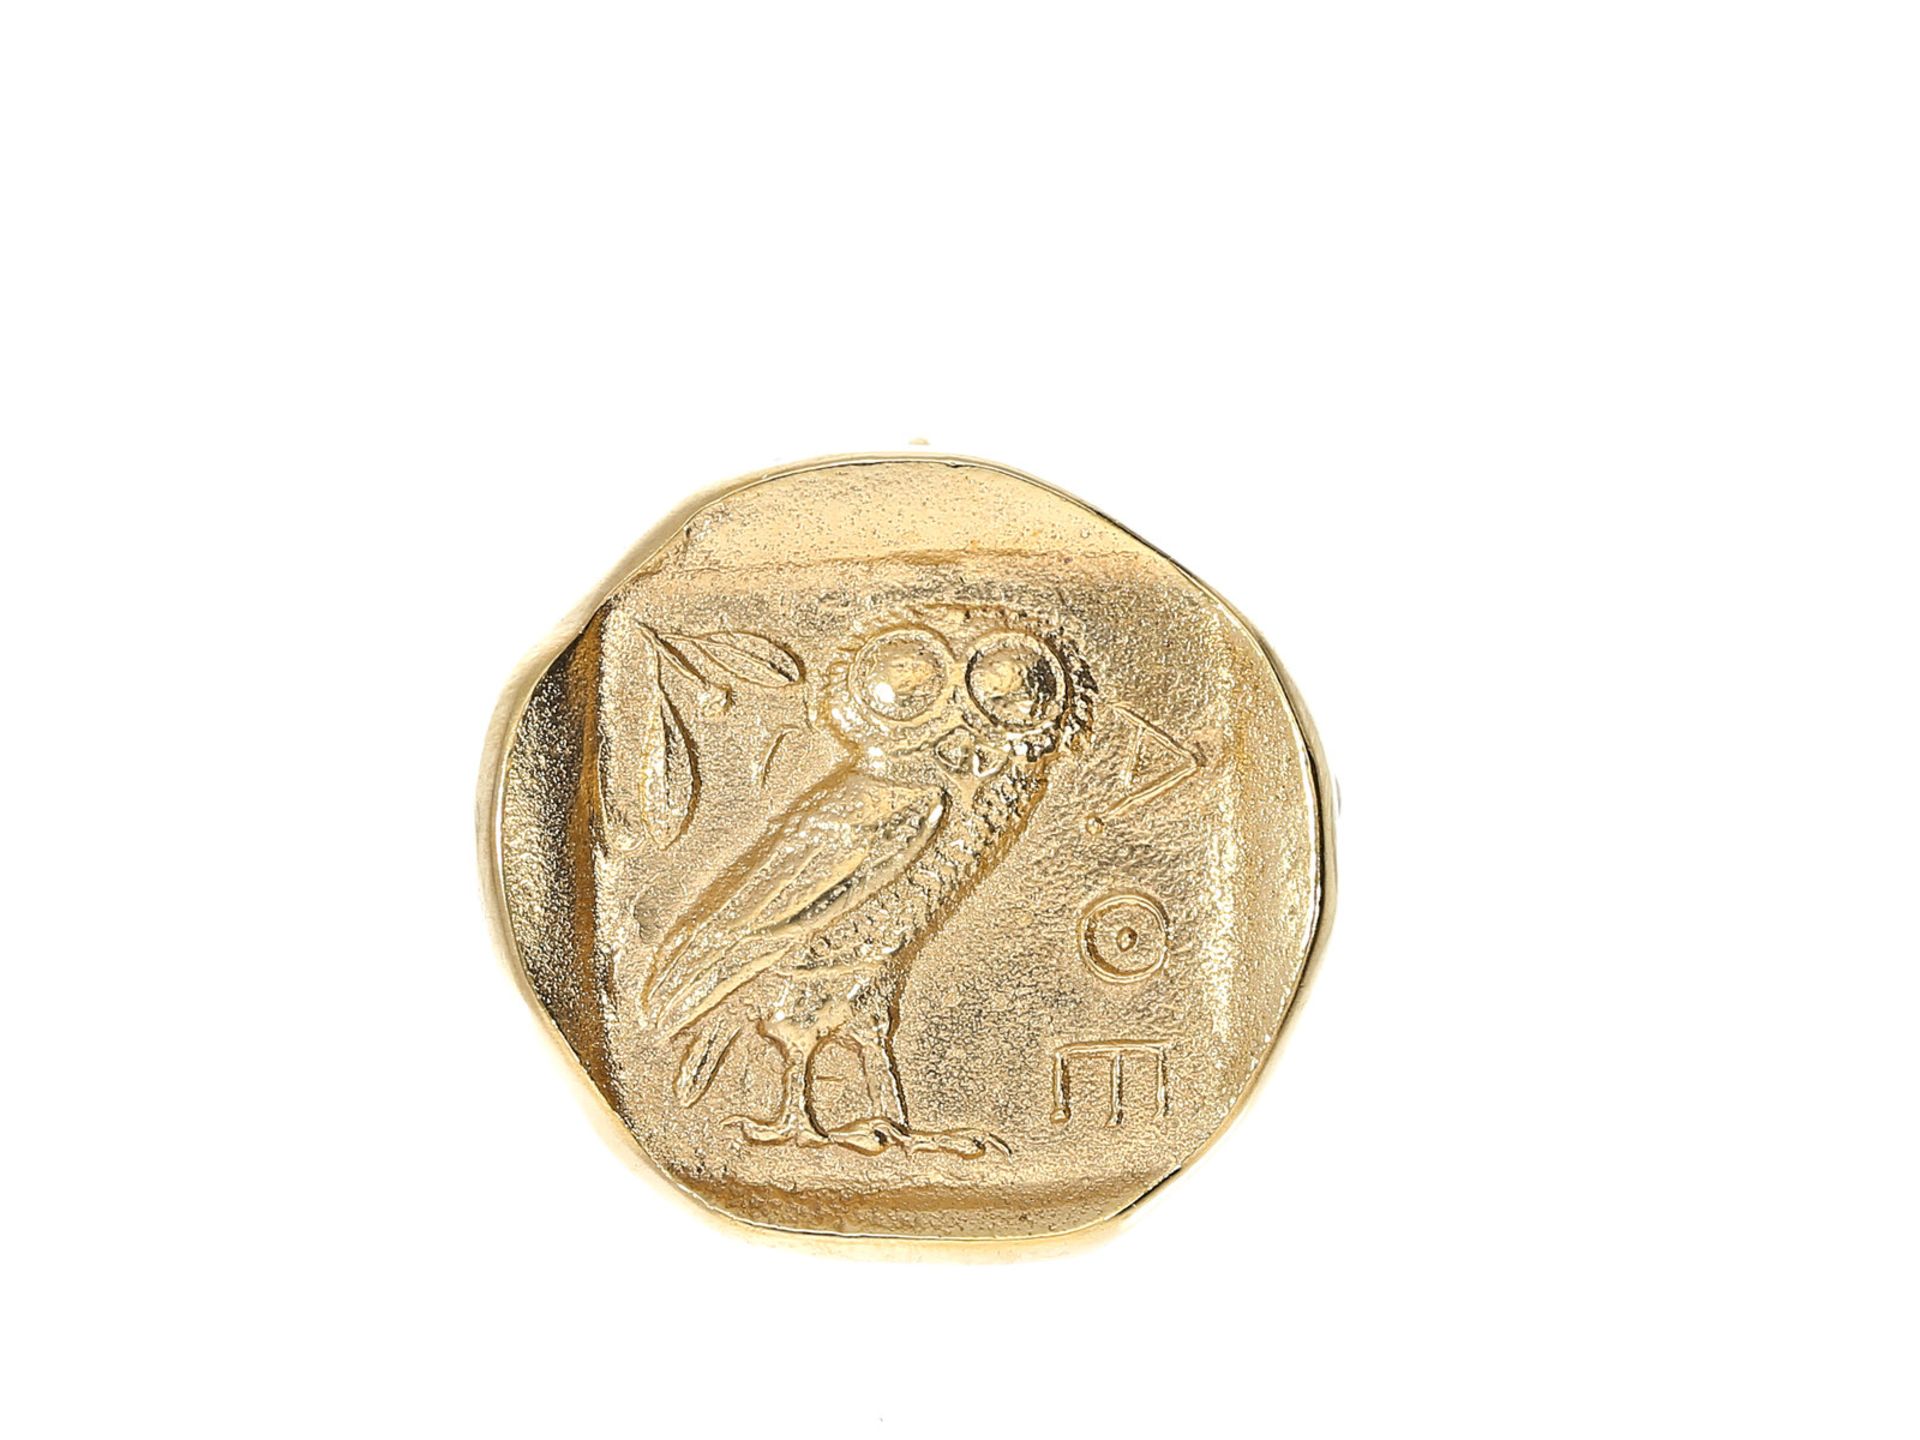 Anhänger/Brosche: Nachbildung einer antiken griechischen Münze (Attika Athen Tetradrachme), 18K